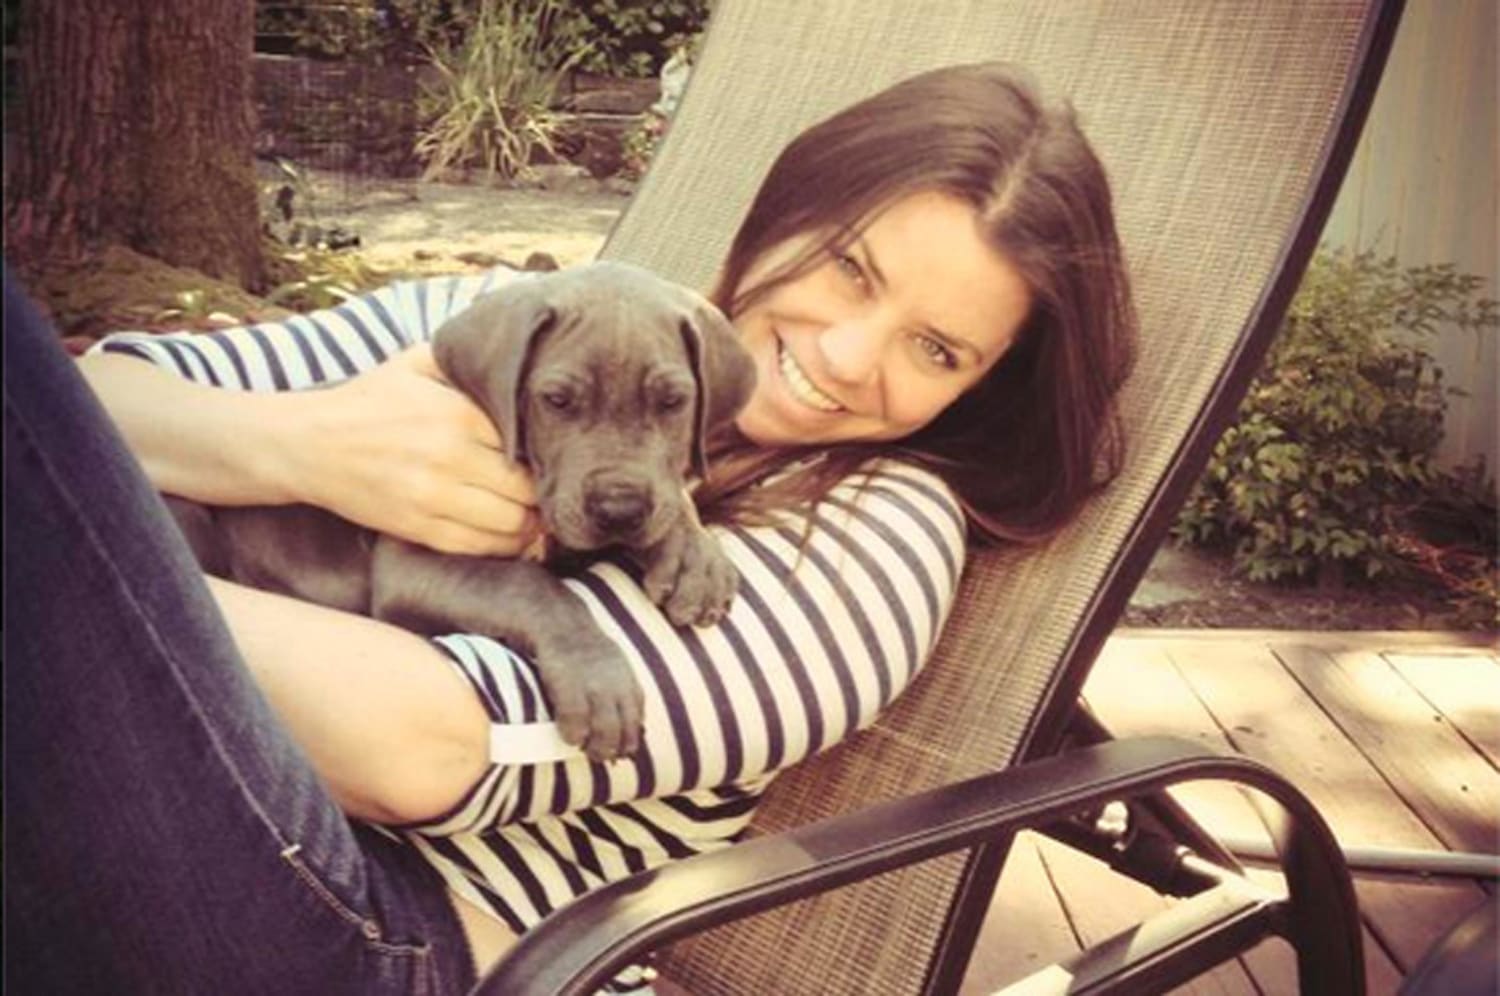 Murió Brittany Maynard, la joven con cáncer terminal que buscaba una muerte digna